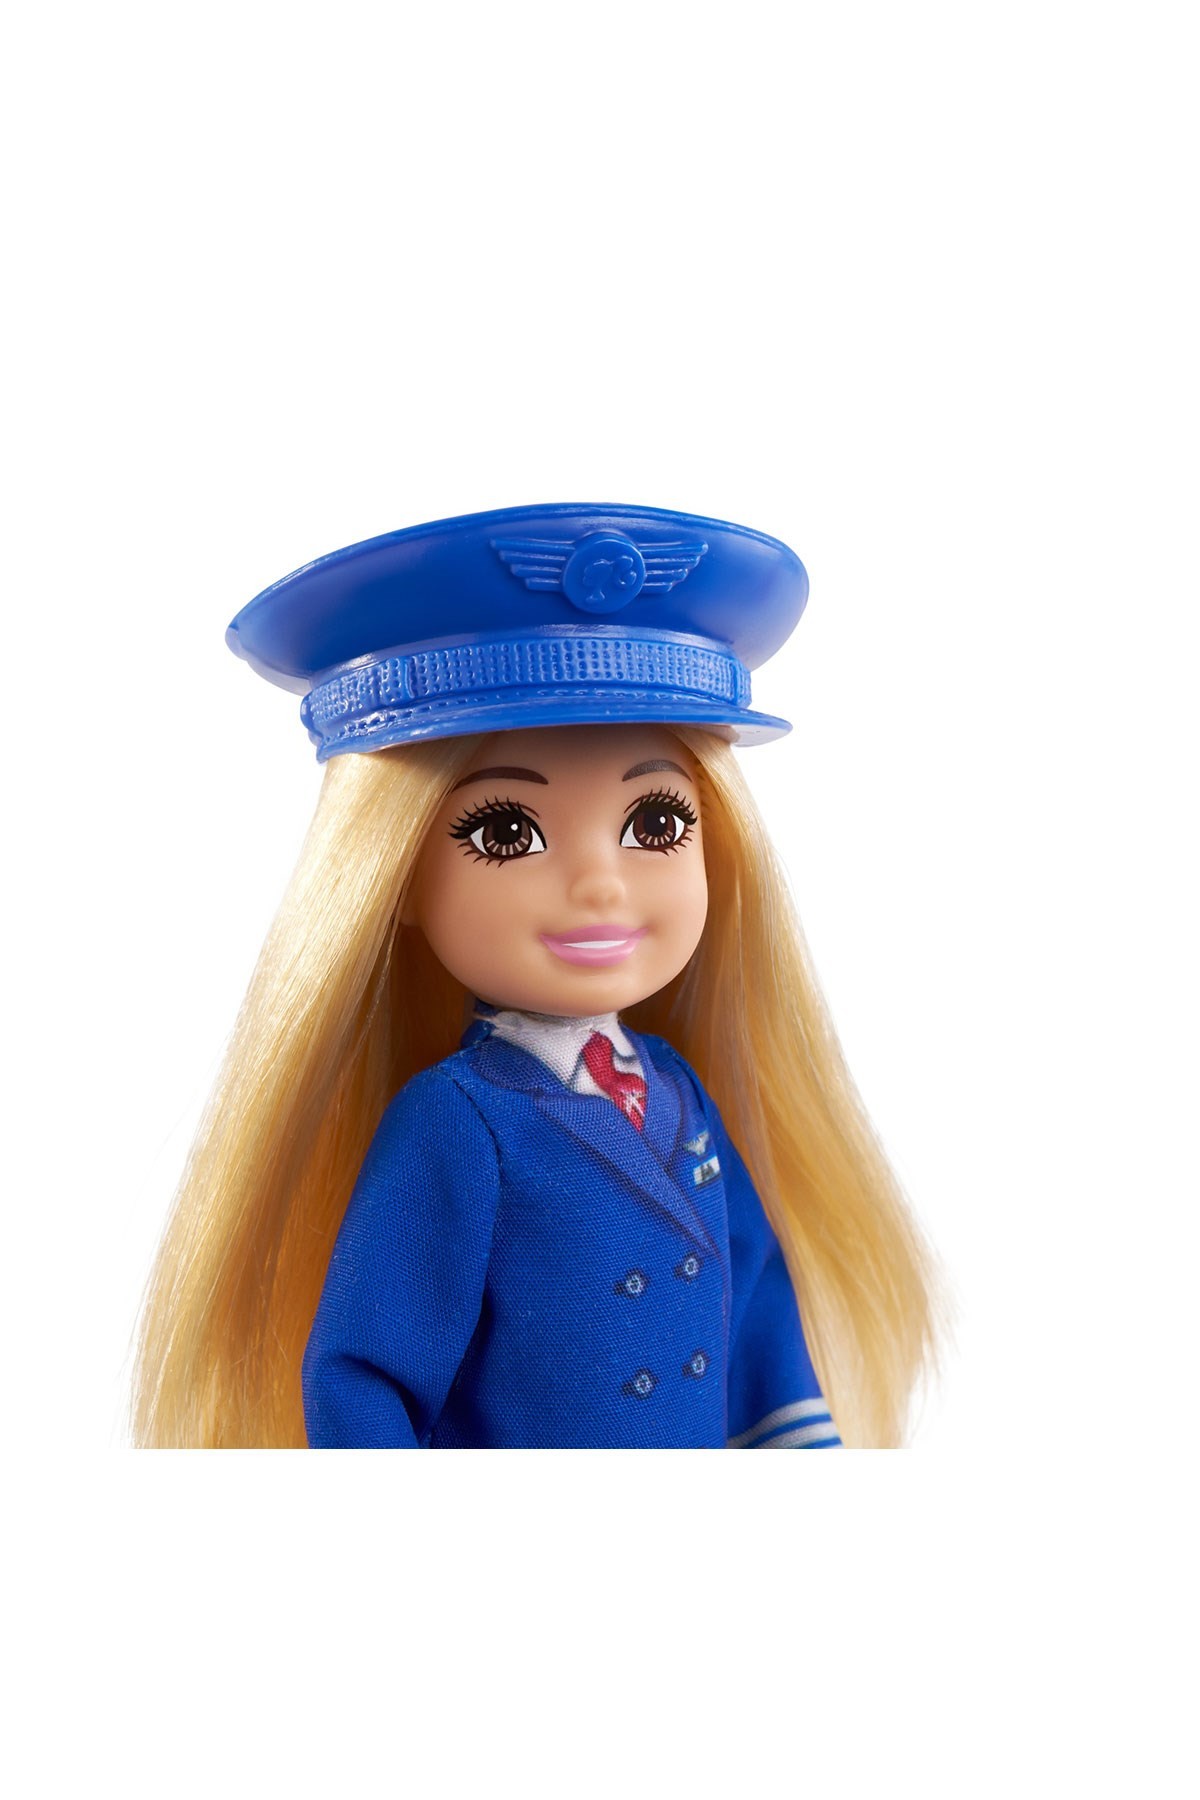 Barbie Chelsea Meslekleri Öğreniyor Bebek Serisi Pilot GTN90